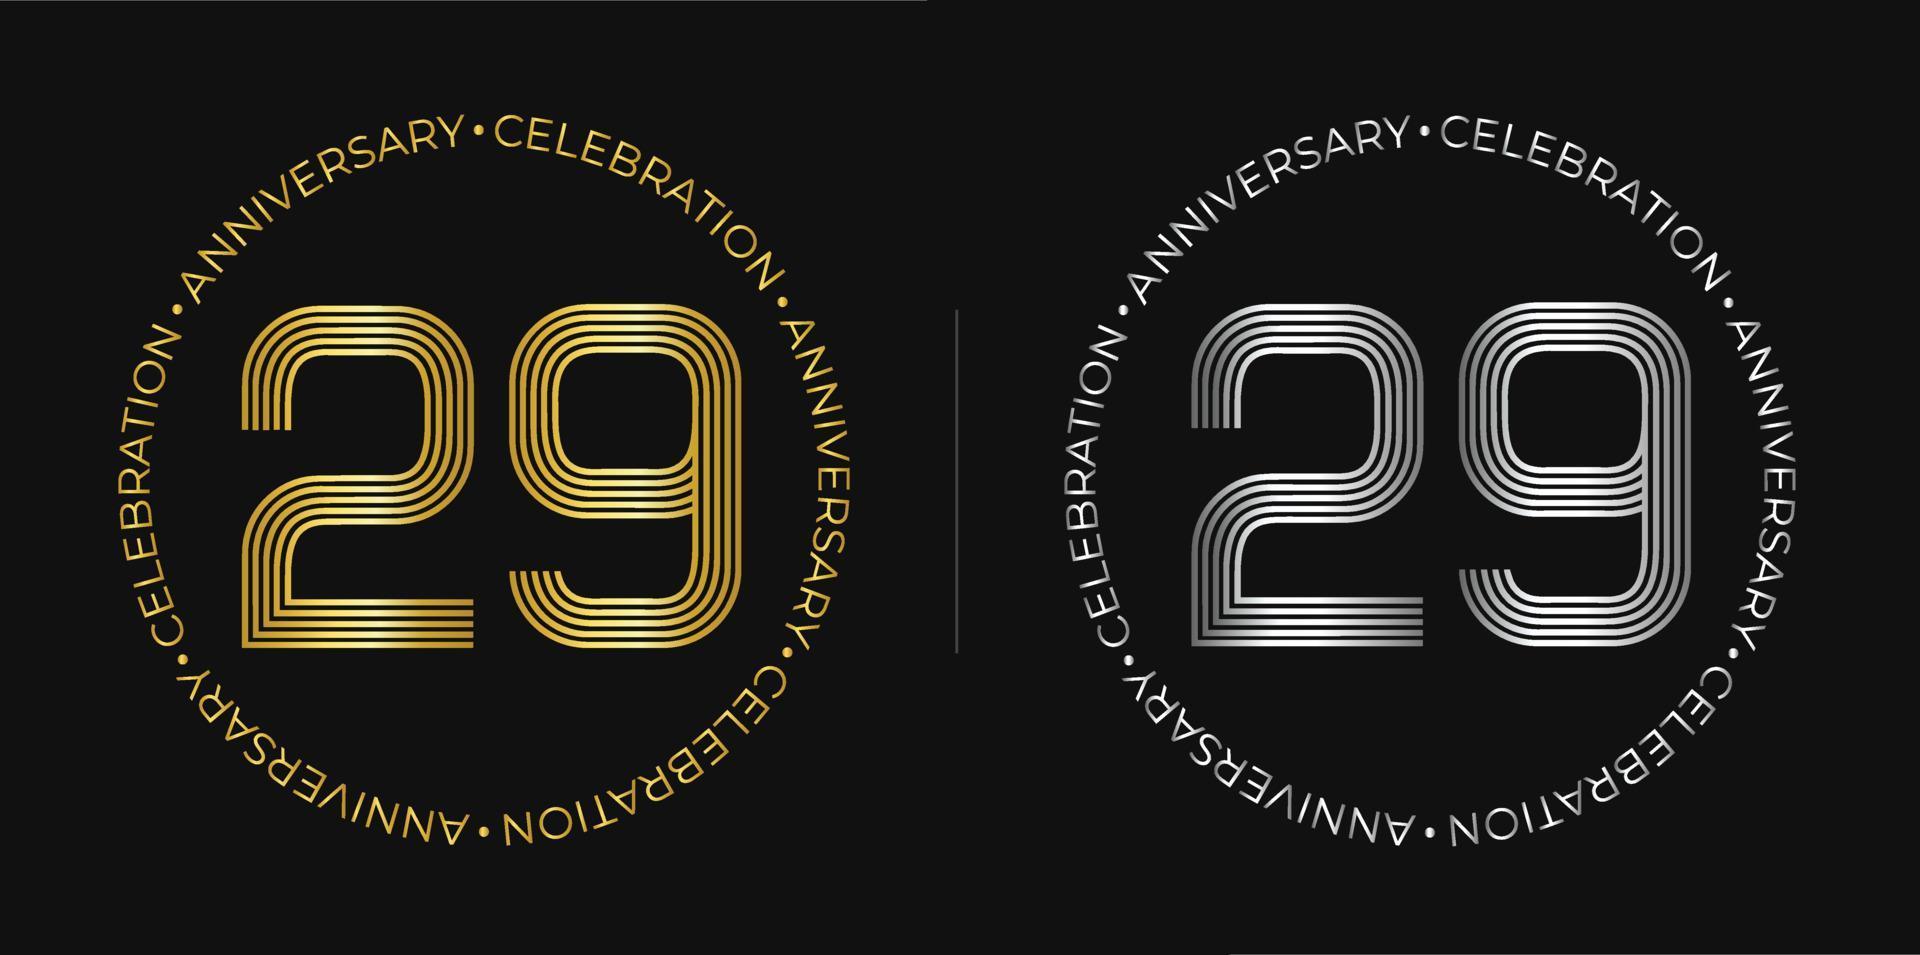 29e anniversaire. bannière de célébration d'anniversaire de vingt-neuf ans aux couleurs dorées et argentées. logo circulaire avec un design original de chiffres aux lignes élégantes. vecteur